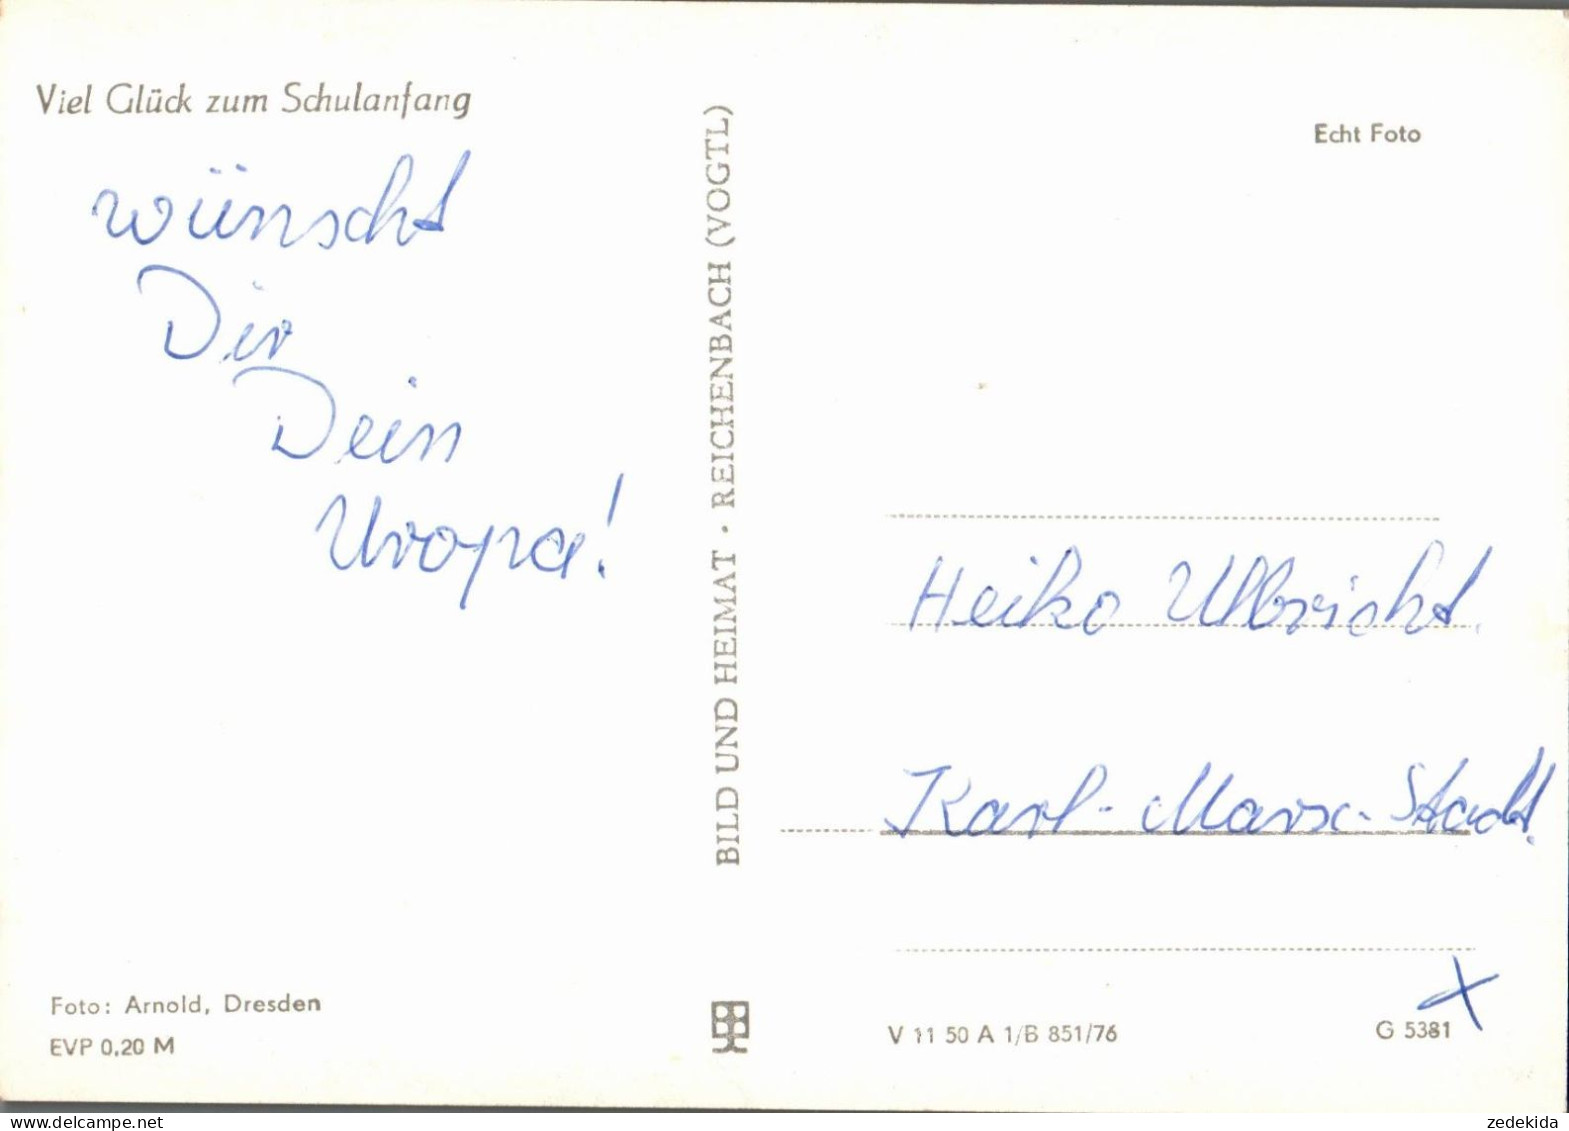 G8194 - Glückwunschkarte Schulanfang - Junge Mädchen Zuckertüte - Verlag Reichenbach DDR - Einschulung